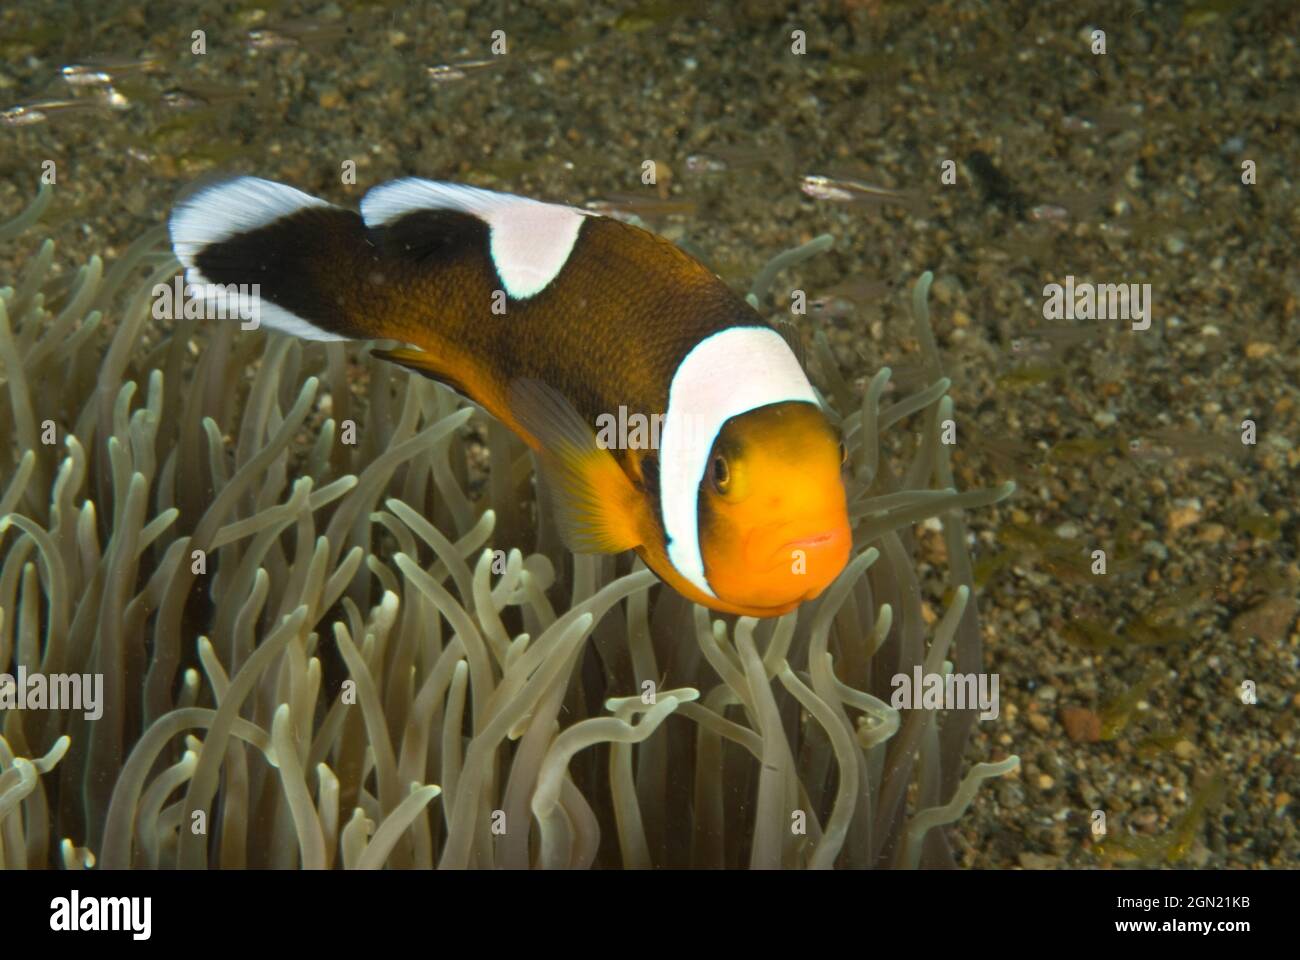 Saddleback clownfish (Amphiprion polymnus), on host Leathery sea anemone (Sebae anemone). Anilao, Manila, Philippines Stock Photo